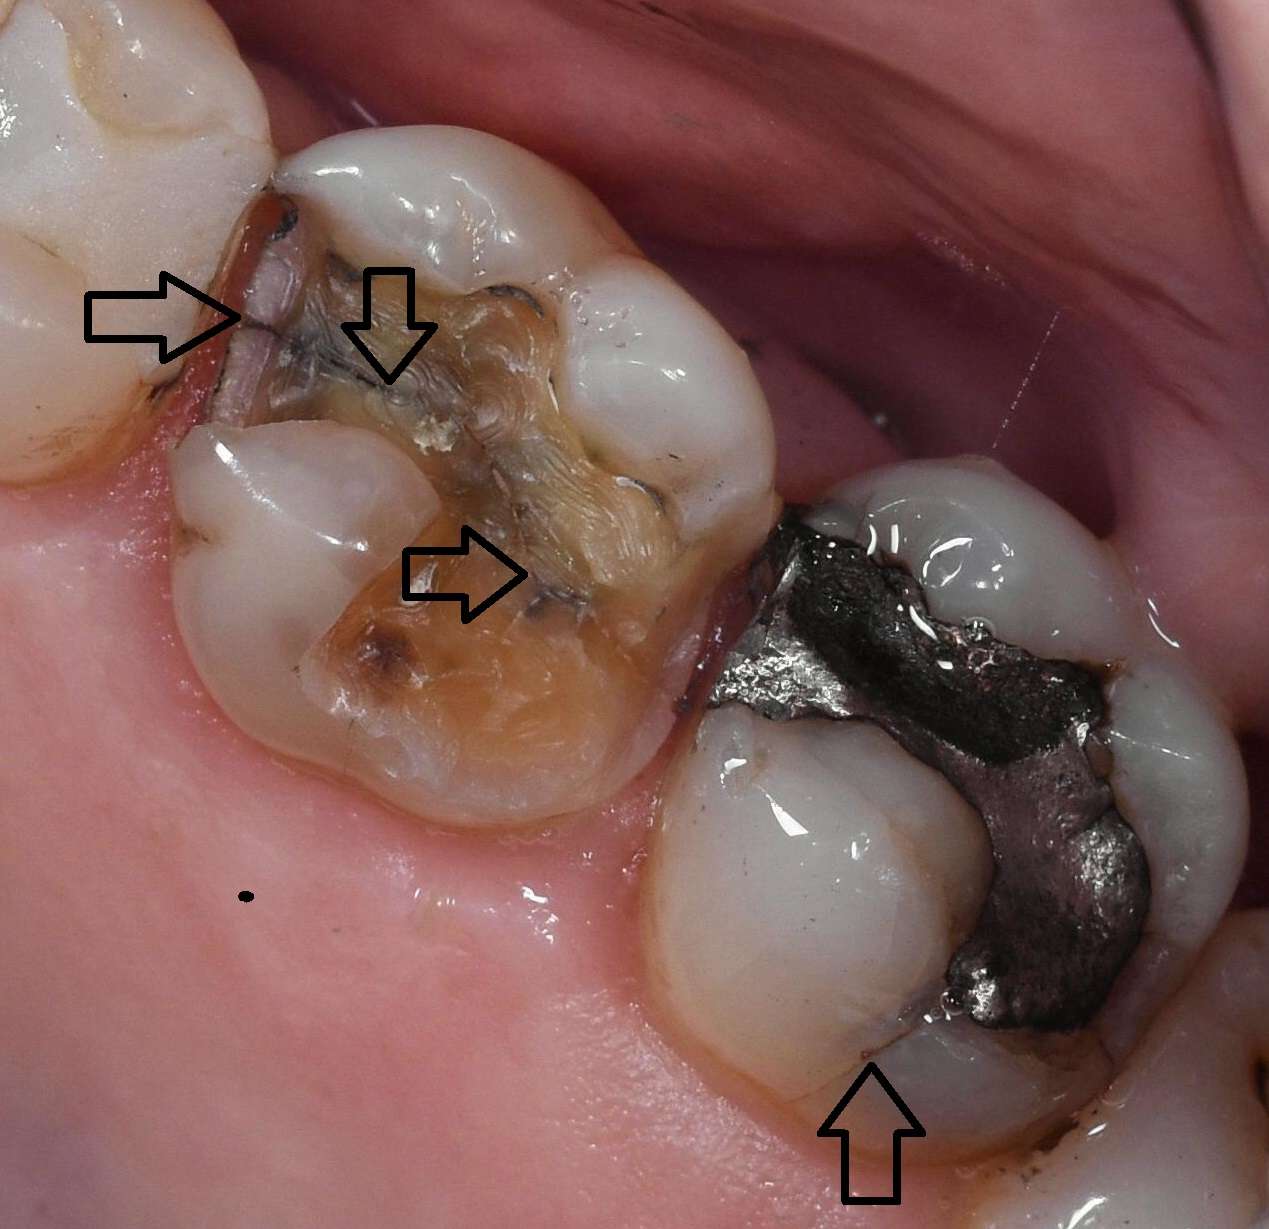 Worn, Cracked or Broken Teeth